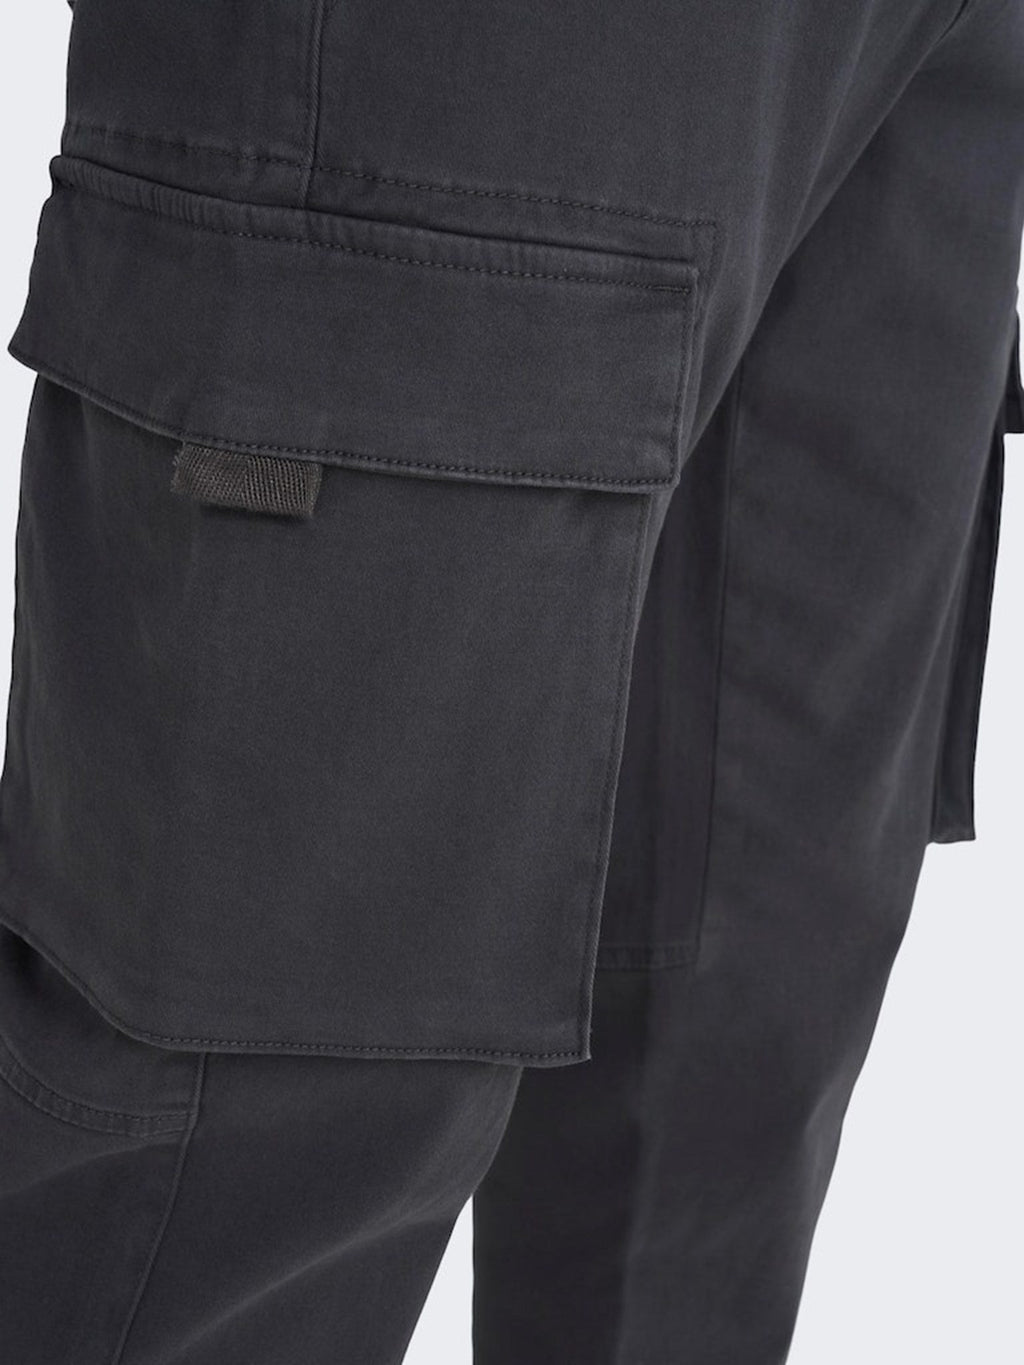 下一个货物裤子 - 灰色细条纹